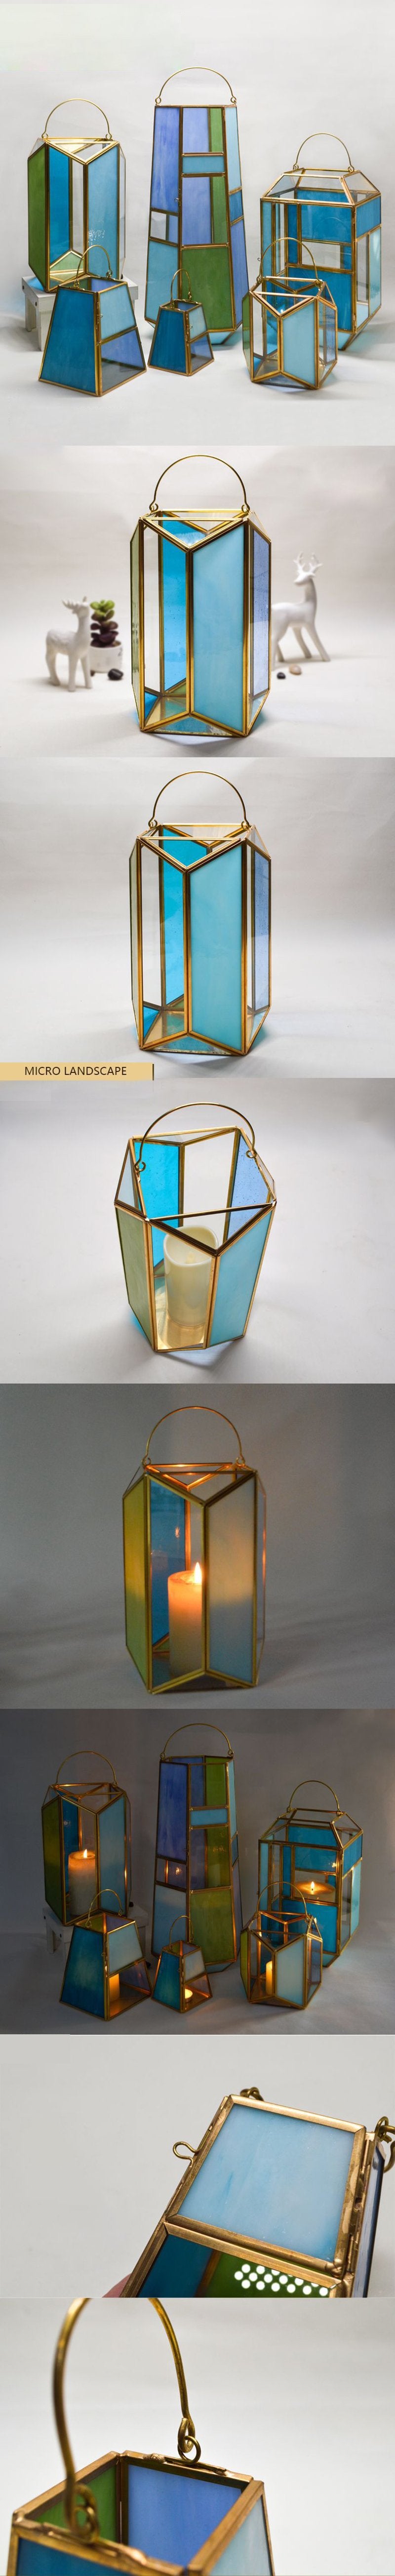 Geometry Flower Lantern - Shop The Deals